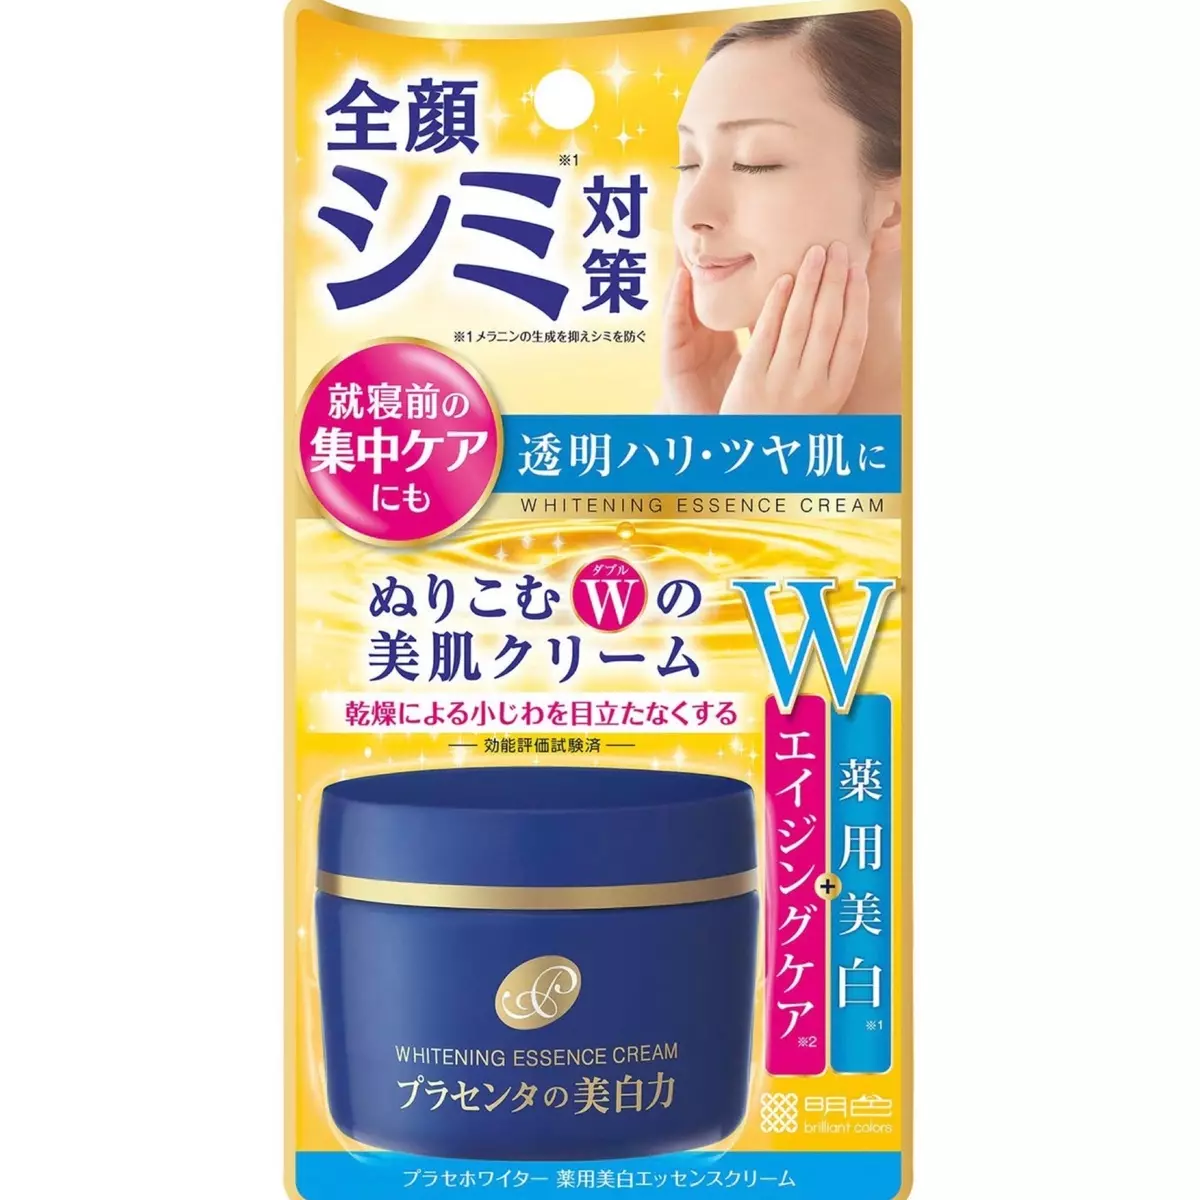 Japonska kozmetika: najboljše kozmetične blagovne znamke iz Japonske. Rosette, Kose in druge profesionalne kozmetike. Pregledi kozmetologov 4498_14